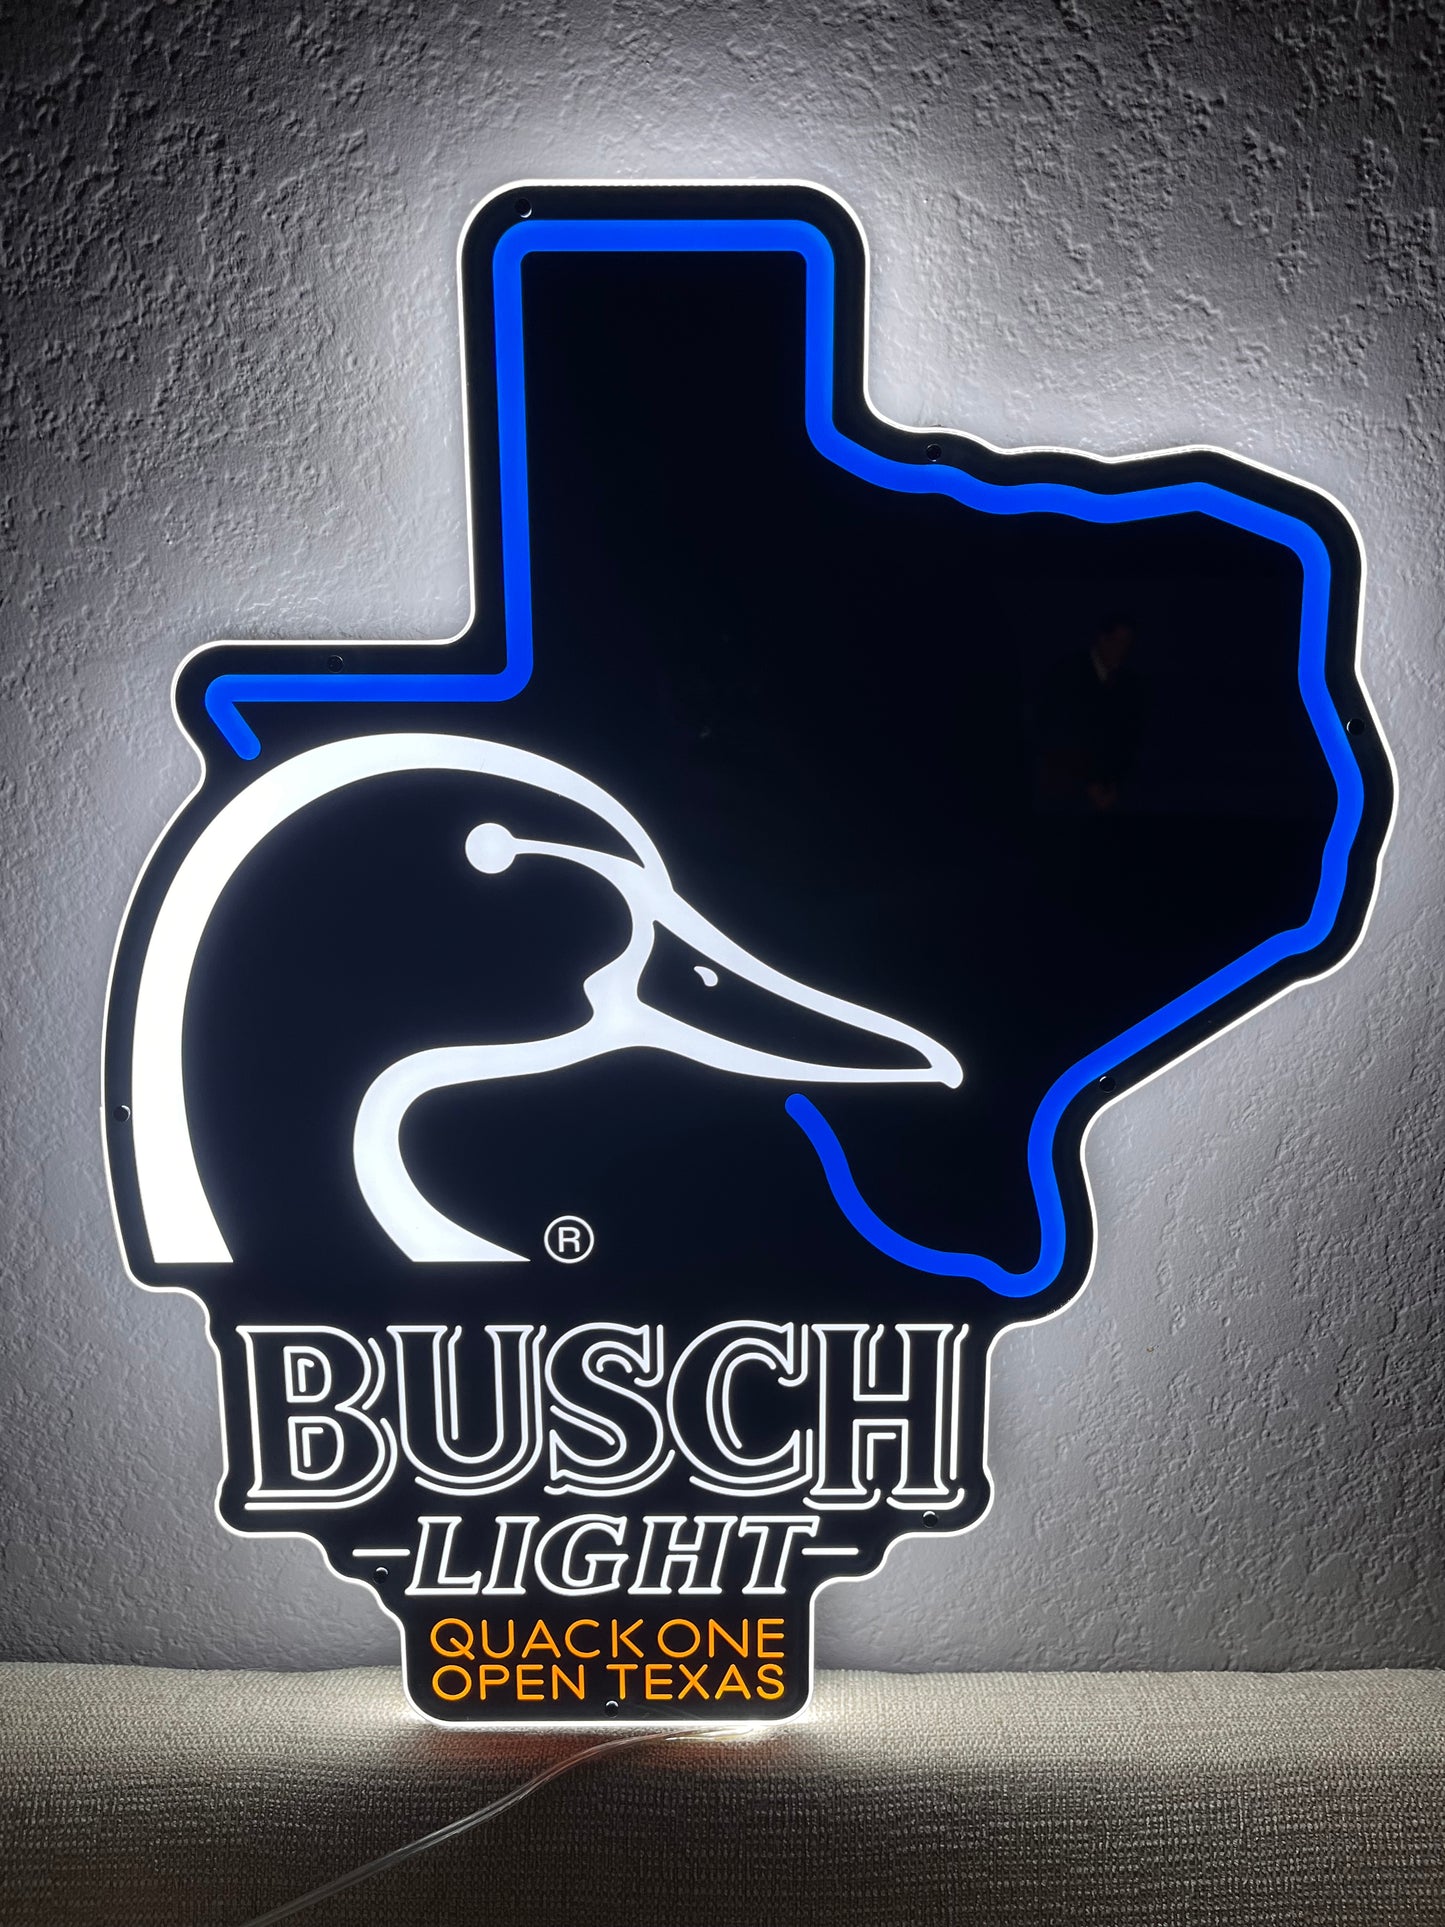 Busch Light Texas Ducks Unlimited Sign